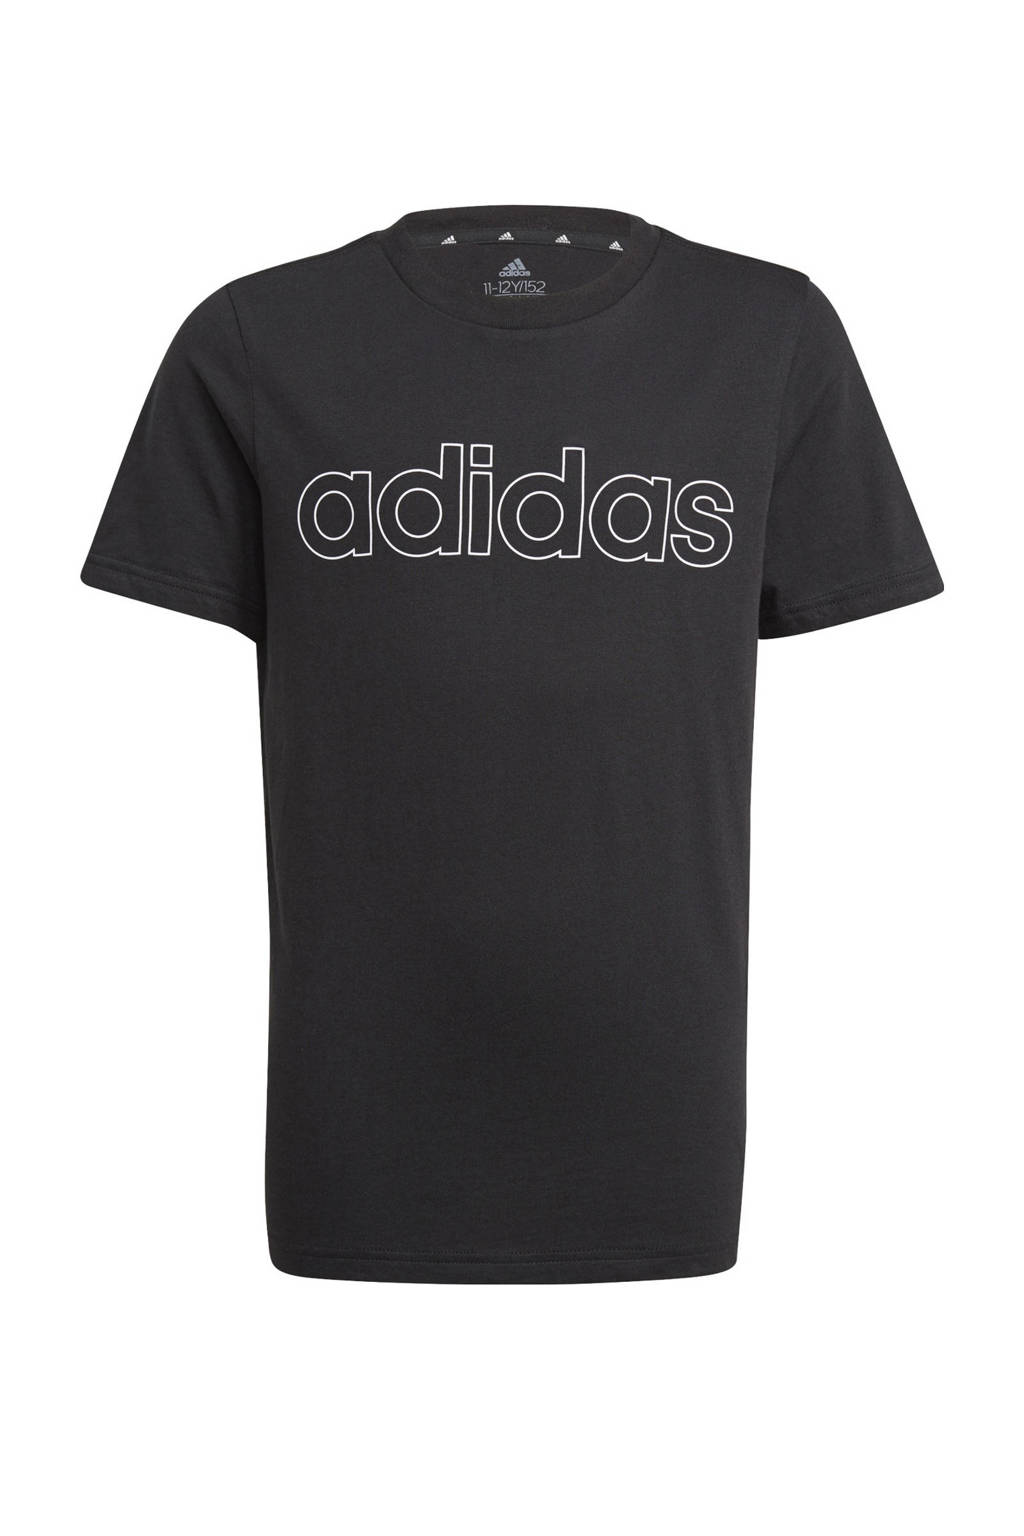 adidas Performance   sport T-shirt zwart/wit